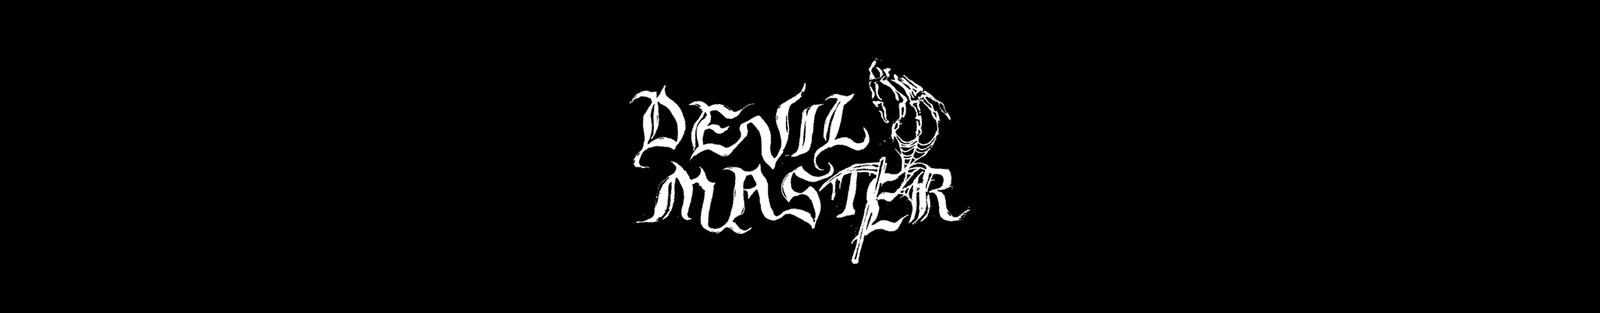 DEVIL MASTER - Official EU/UK Store - Evil Greed